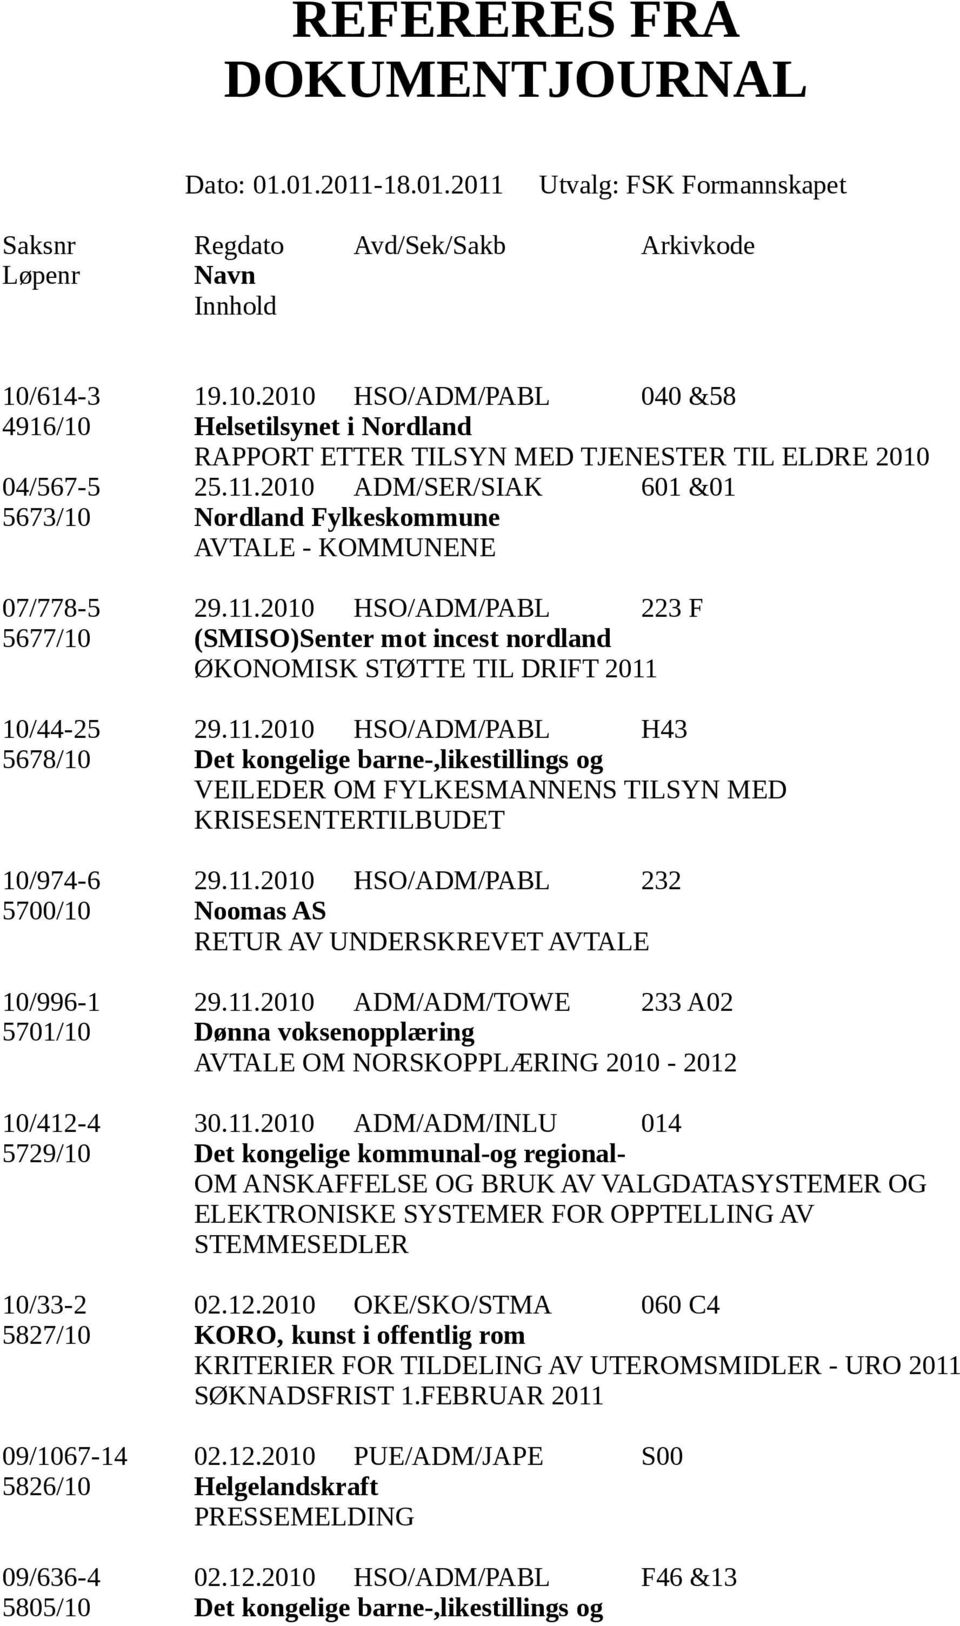 2010 HSO/ADM/PABL 223 F 5677/10 (SMISO)Senter mot incest nordland ØKONOMISK STØTTE TIL DRIFT 2011 